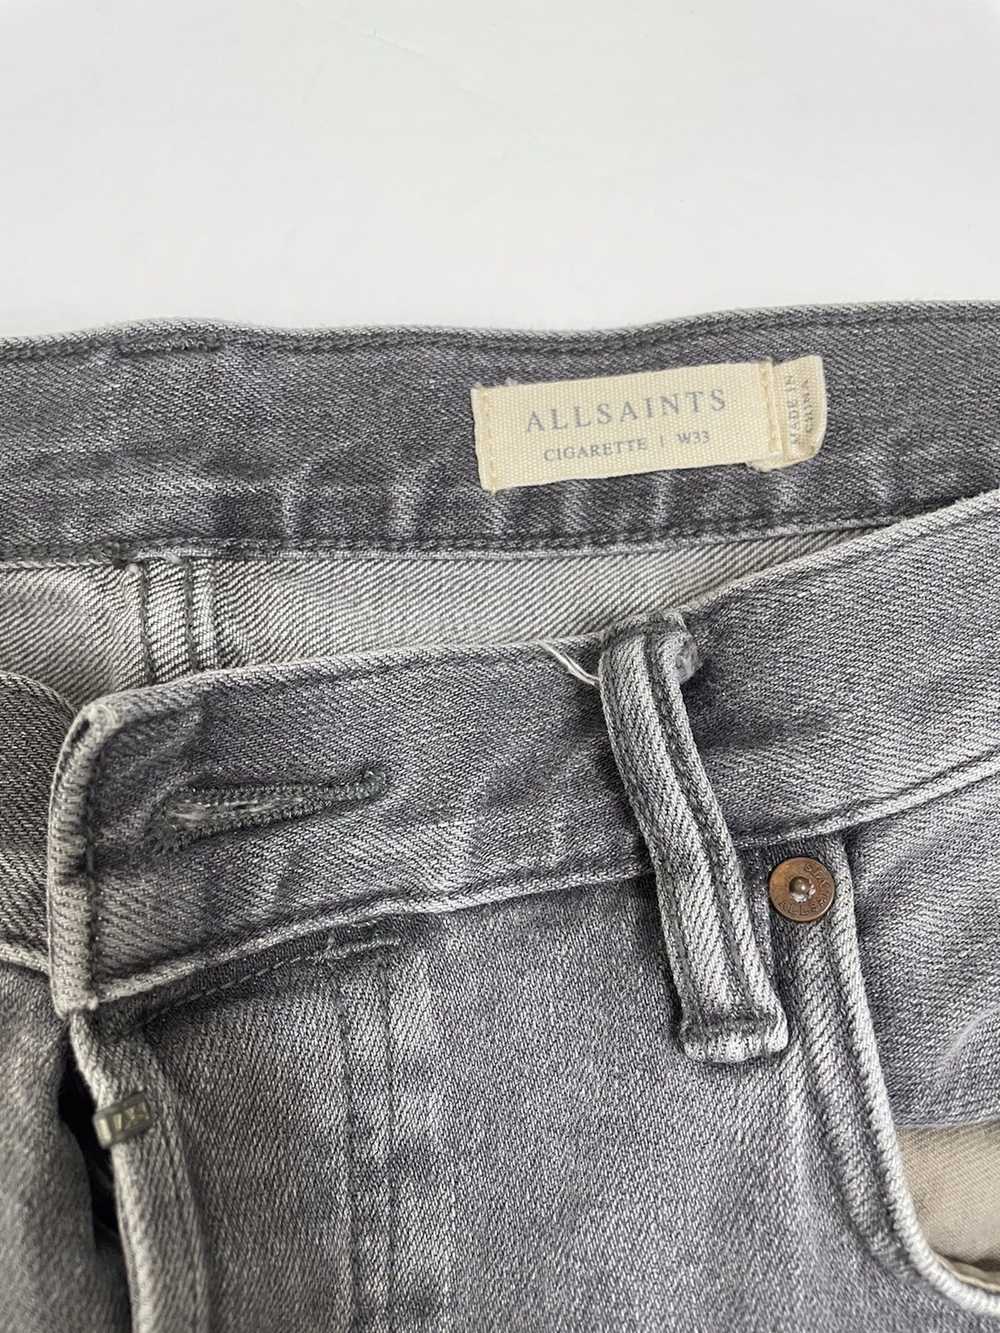 Allsaints AllSaints Jeans - image 3